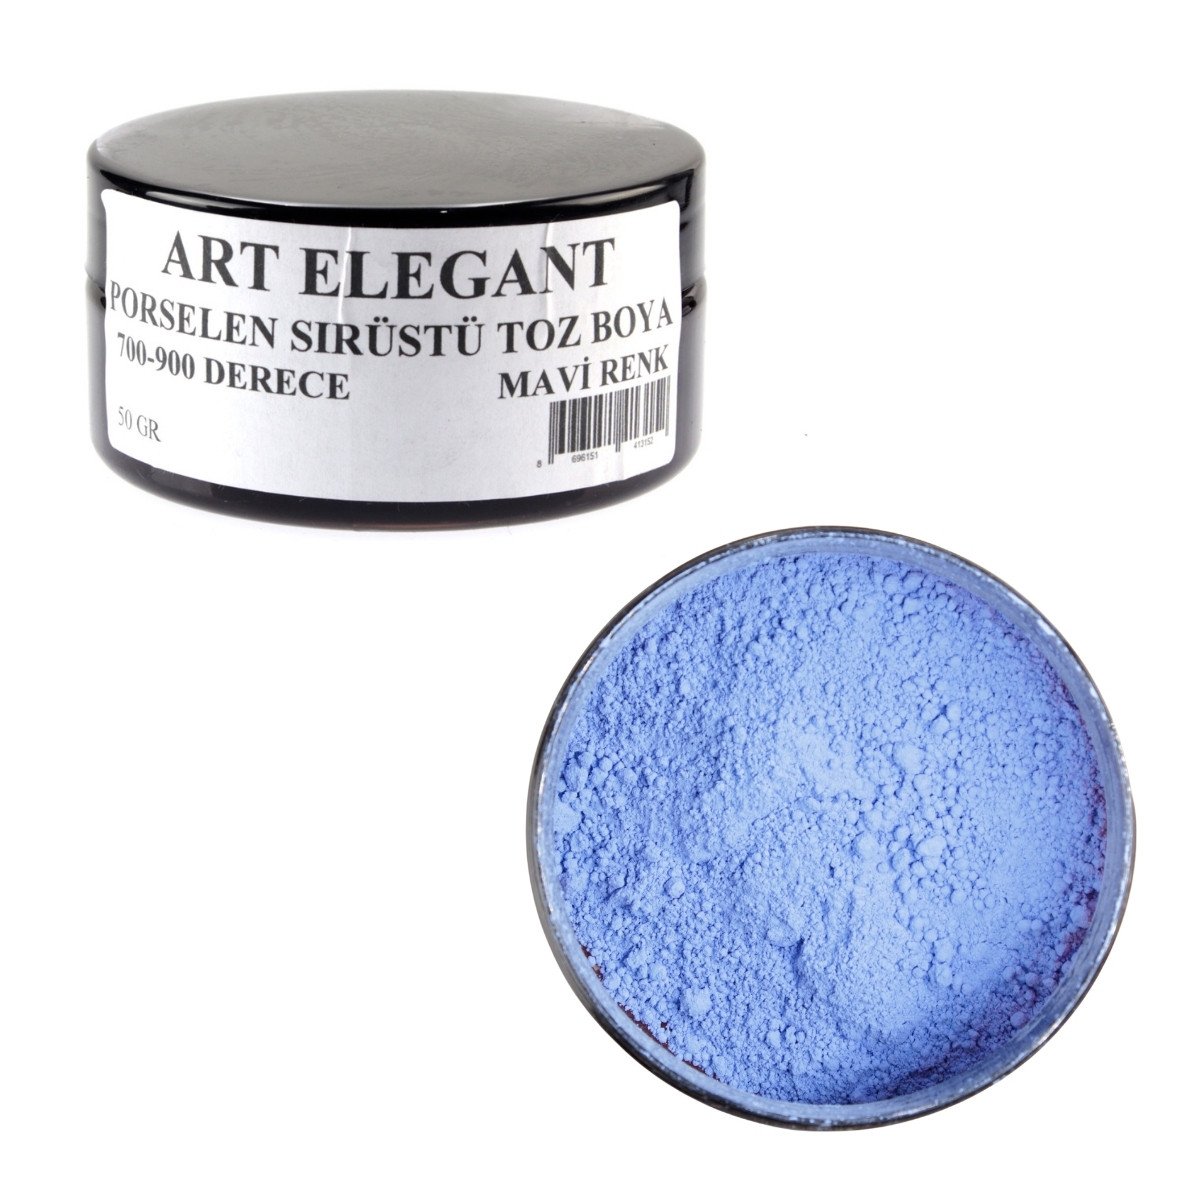 Art Elegant Porselen Sırüstü Toz Boya 50gr Mavi